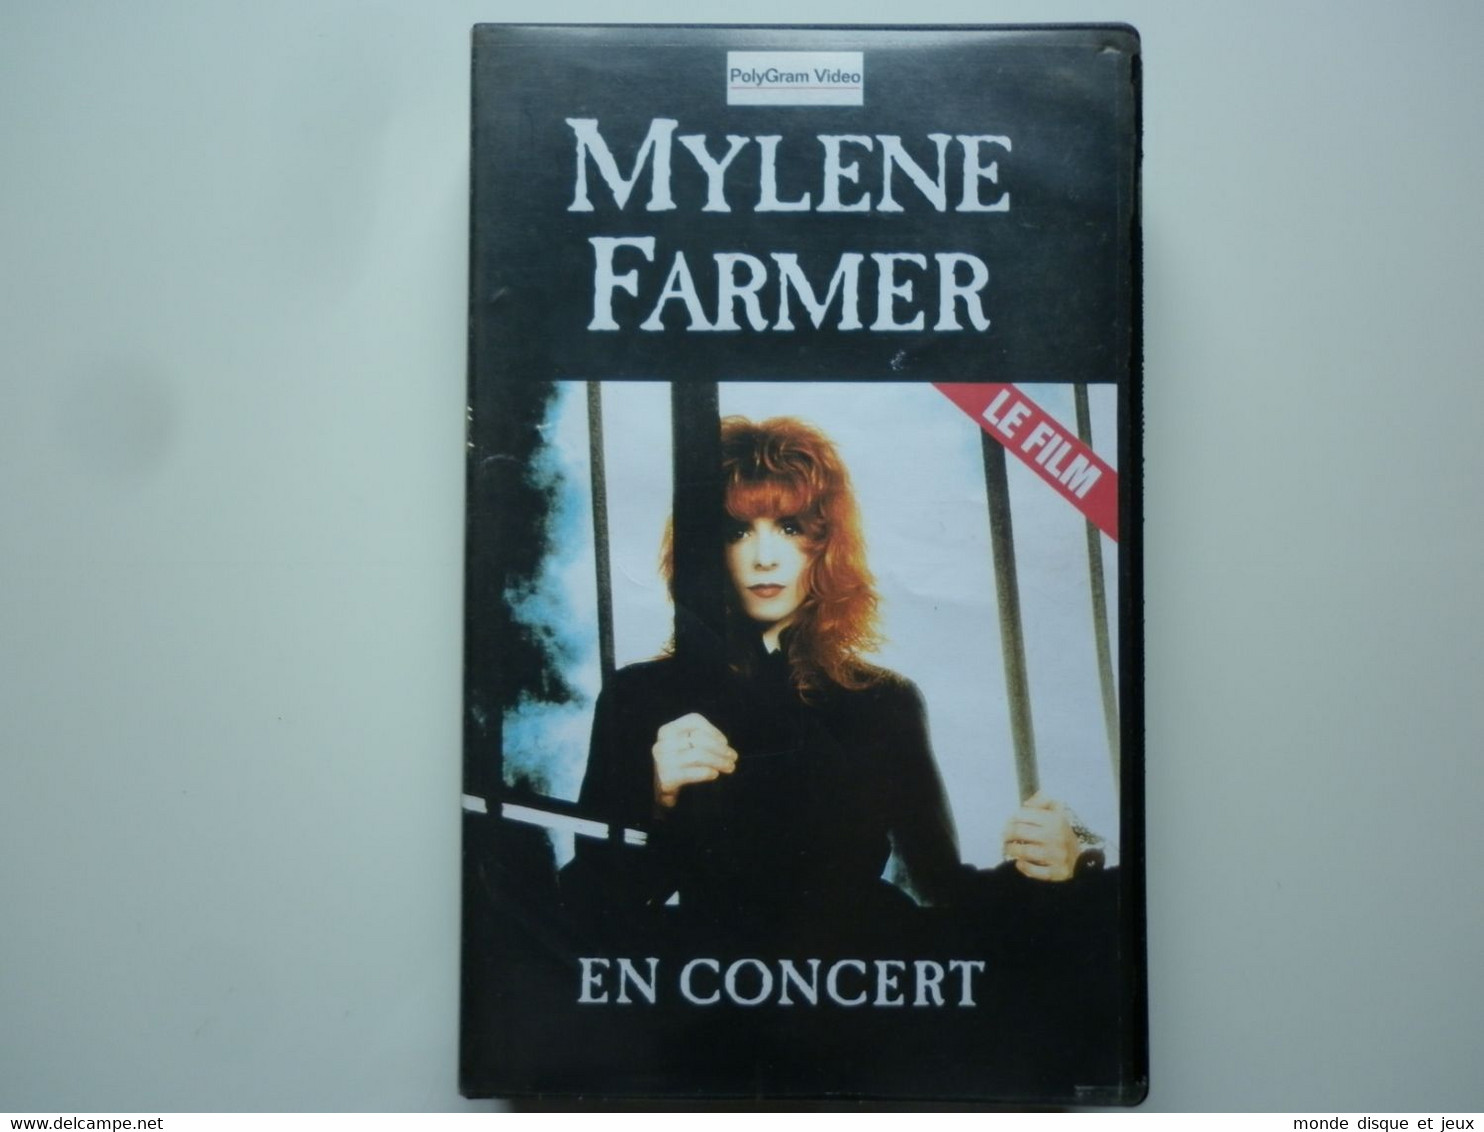 Mylene Farmer Vhs En Concert Le Film éditeur PolyGram Video BASF - Conciertos Y Música